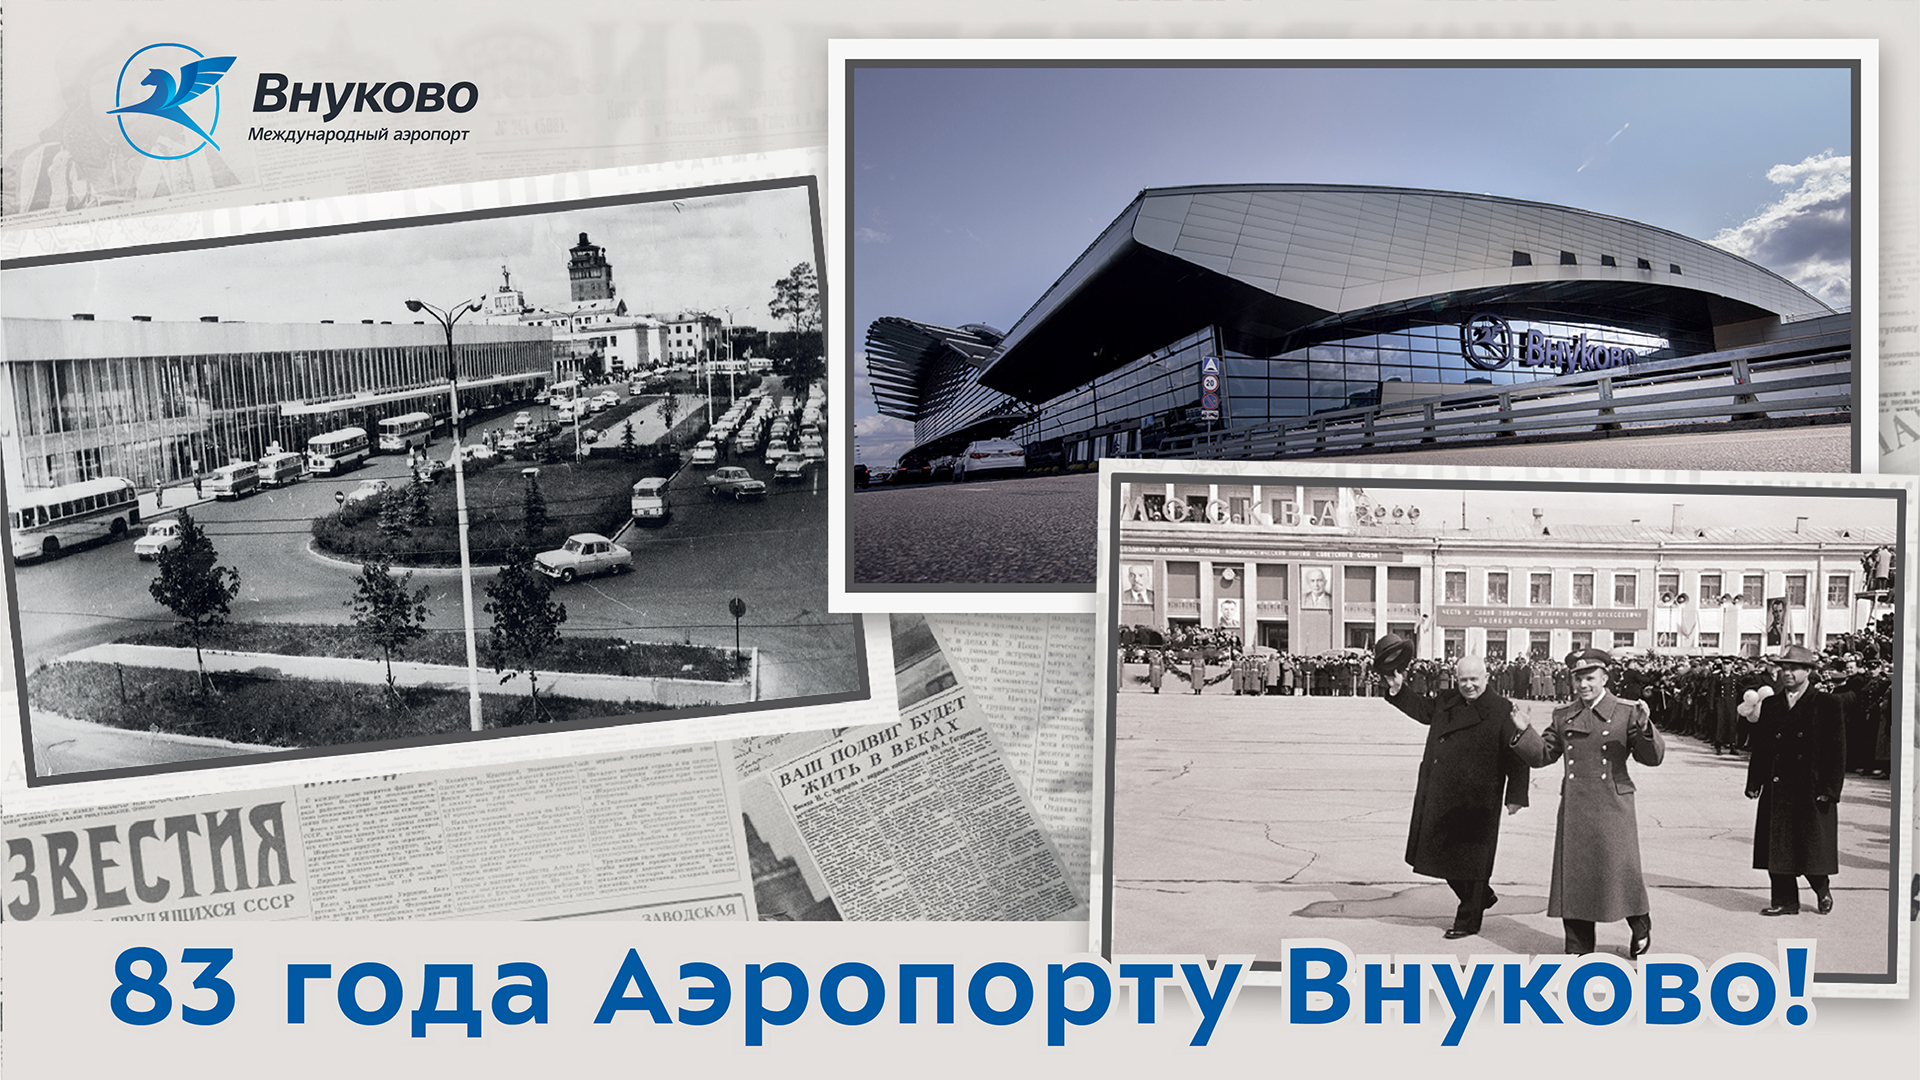 Аэропорт Внуково: 83 года надежности и развития